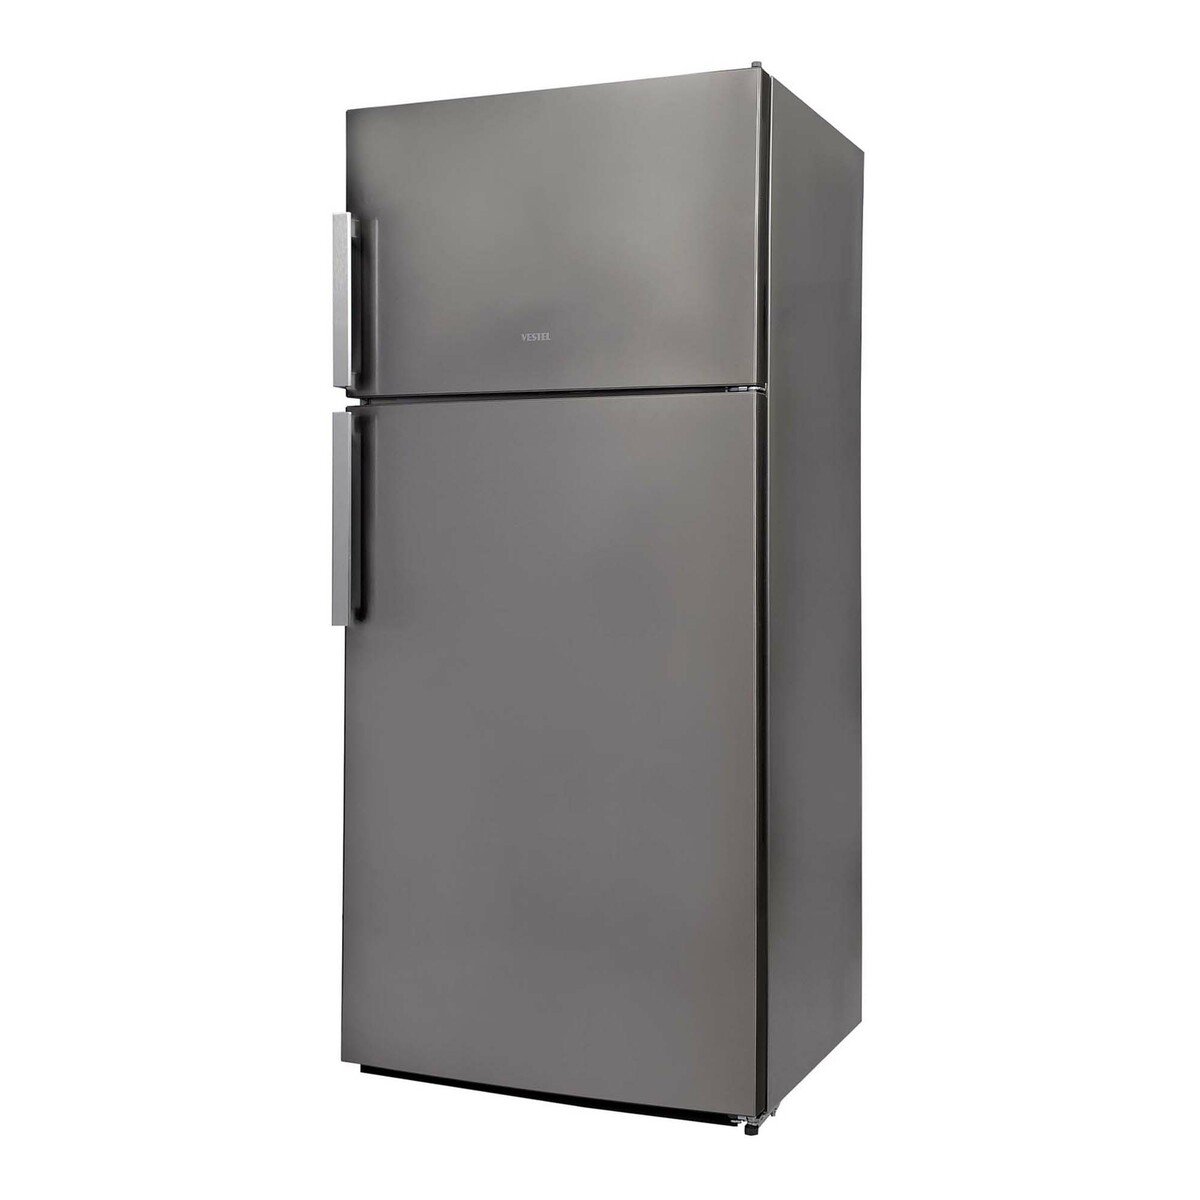 Vestel Double Door Refrigerator NF684X 850LTR